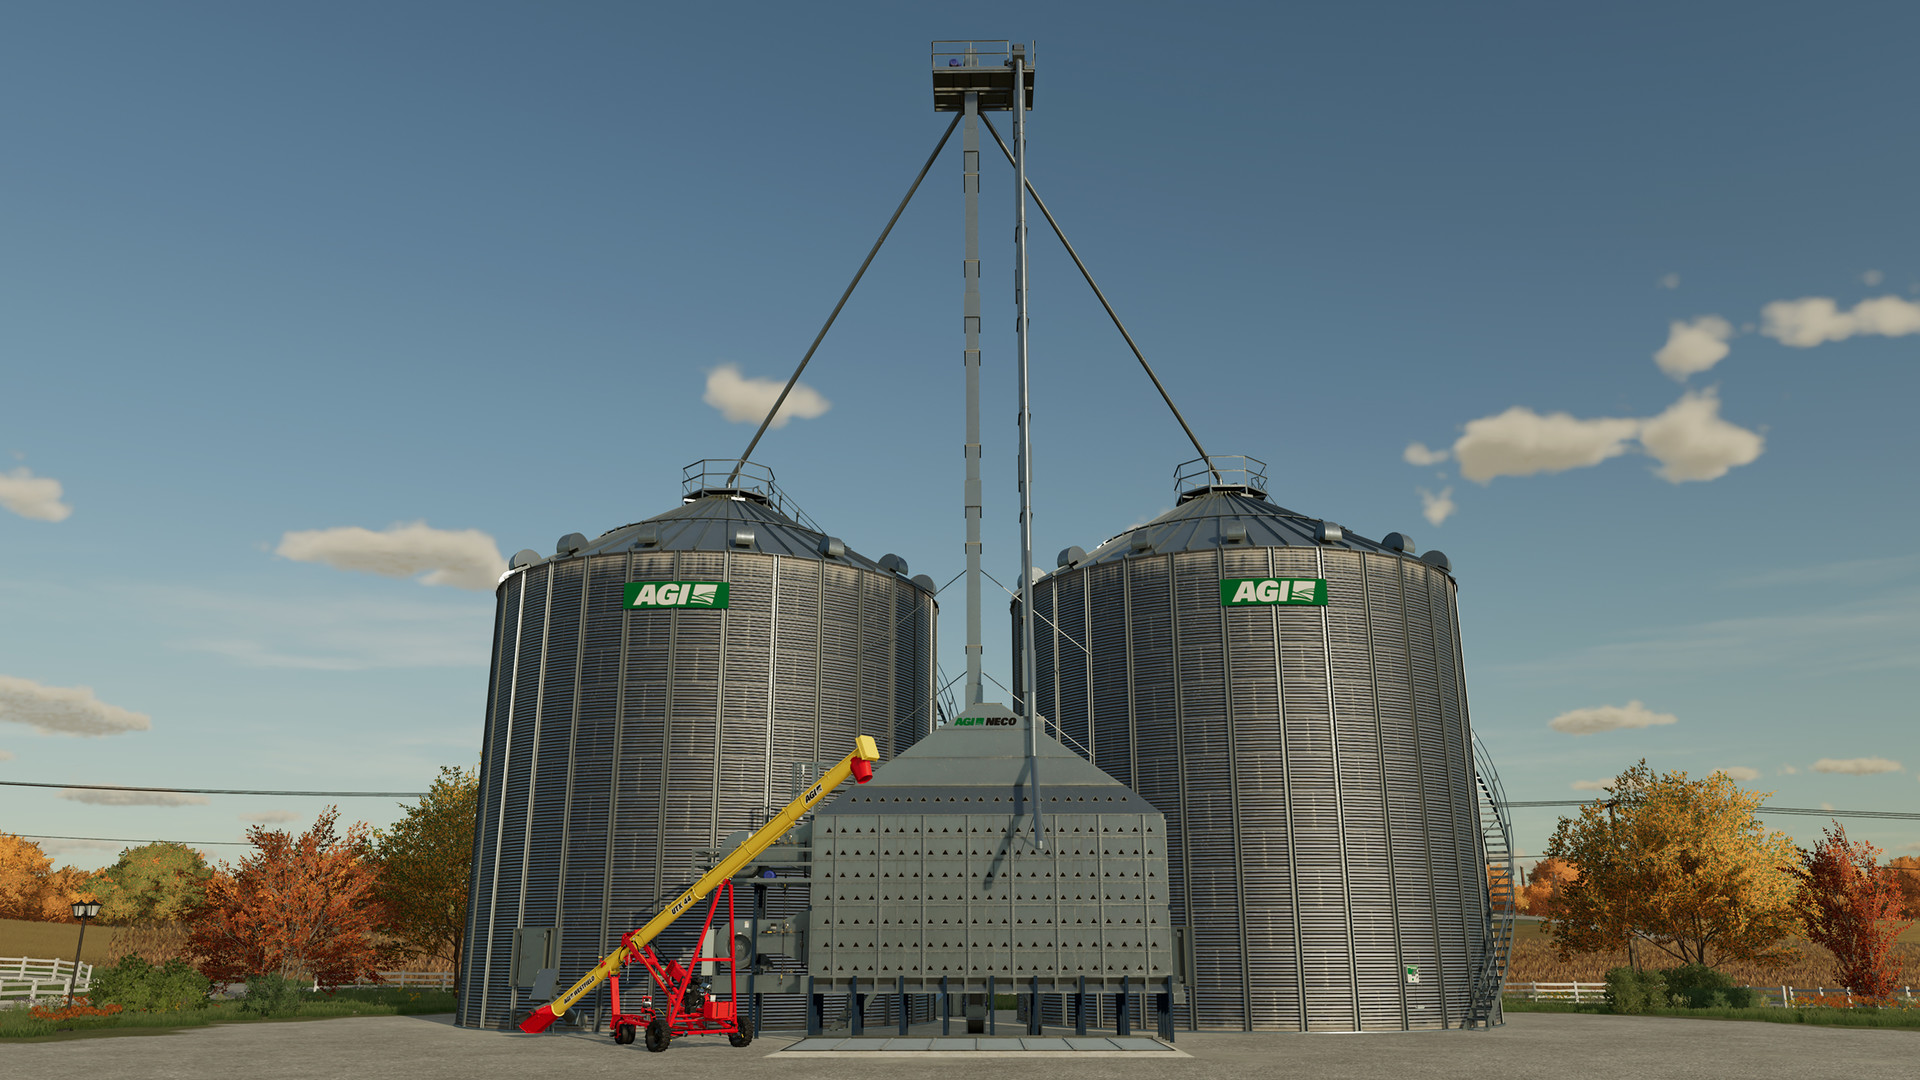 GeForce Garage: Landwirtschafts-Simulator 22 Mod 